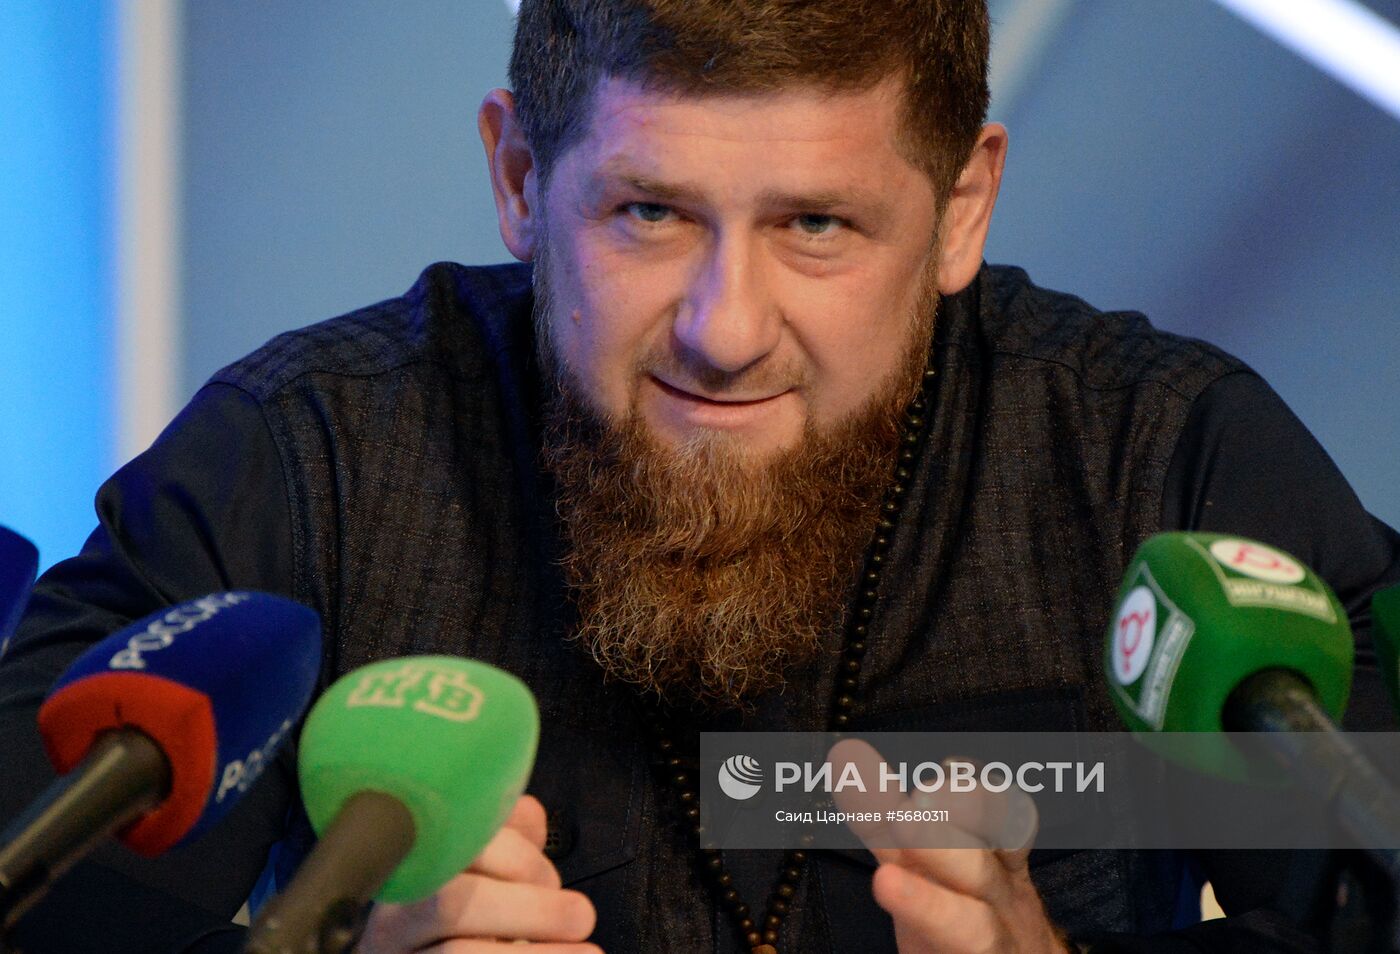 П/к главы Чеченской Республики Рамзана Кадырова